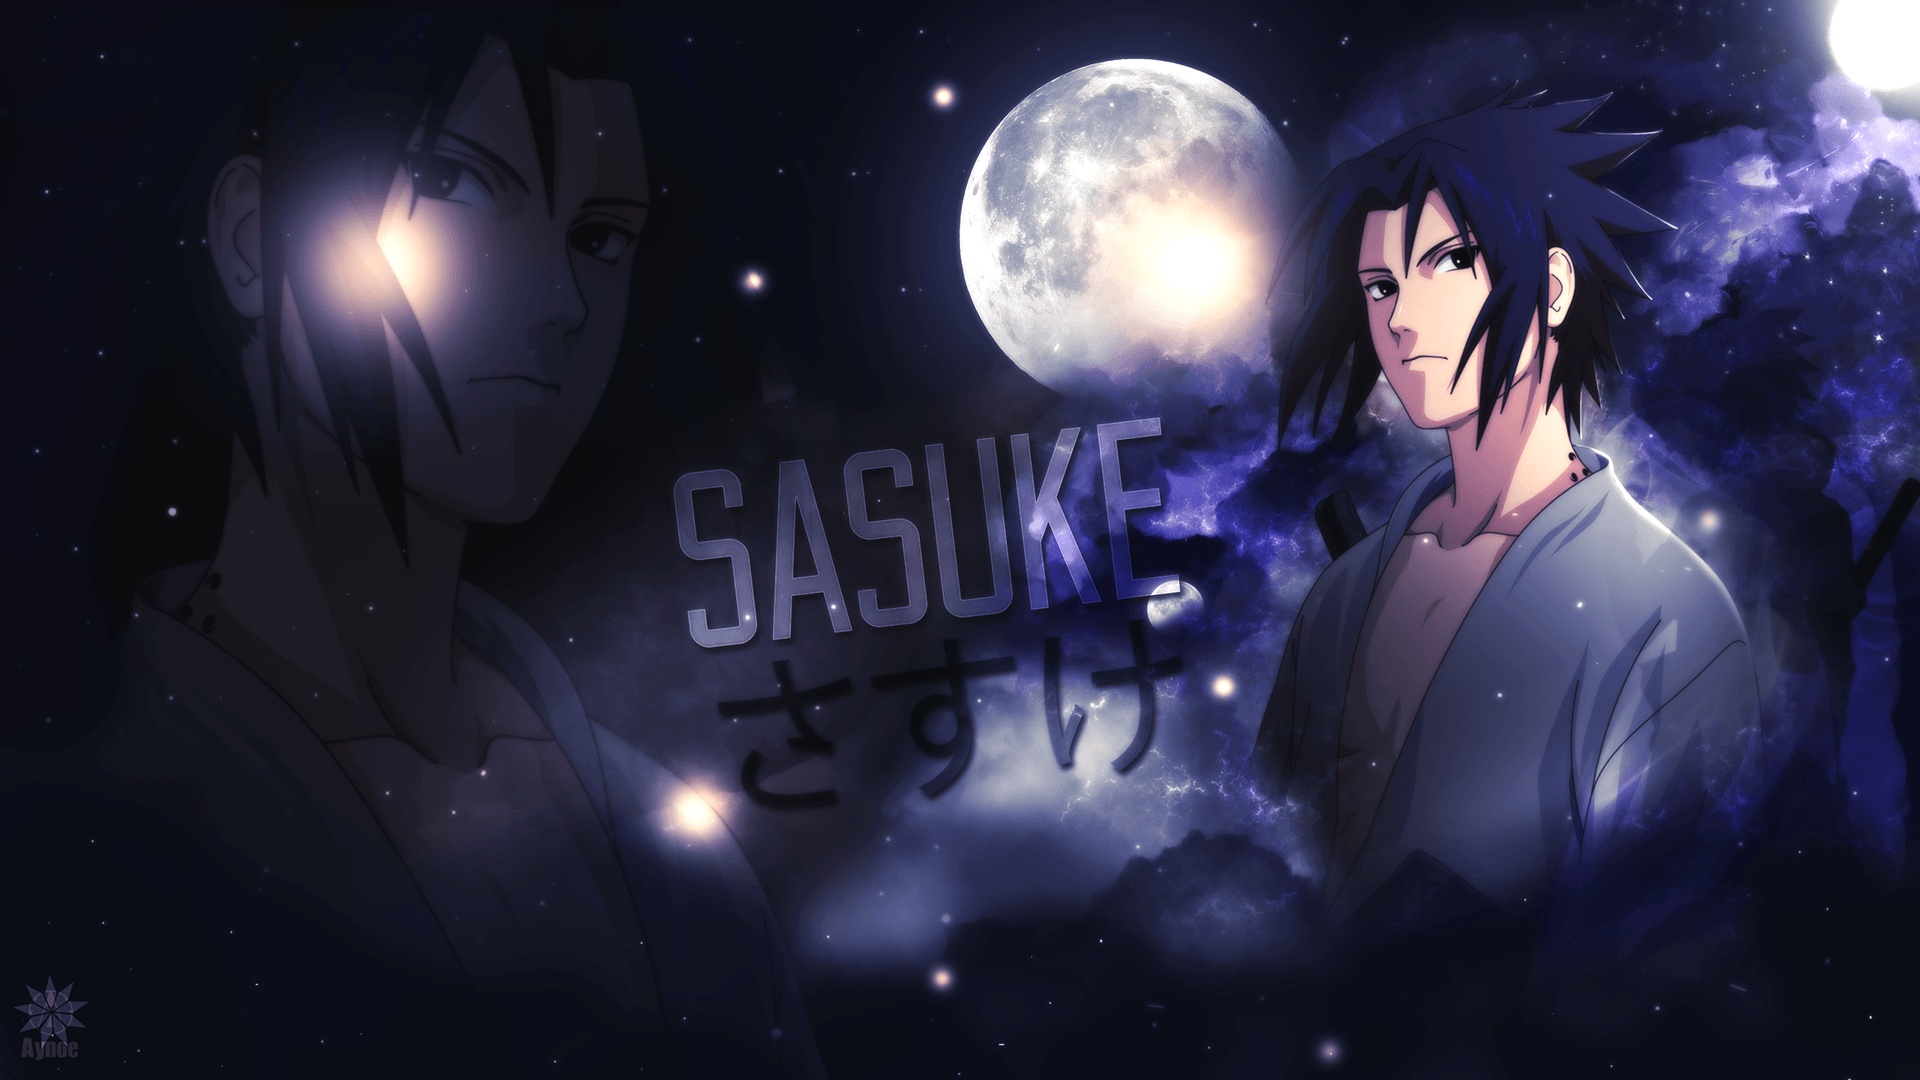 Sasuke free wallpaper